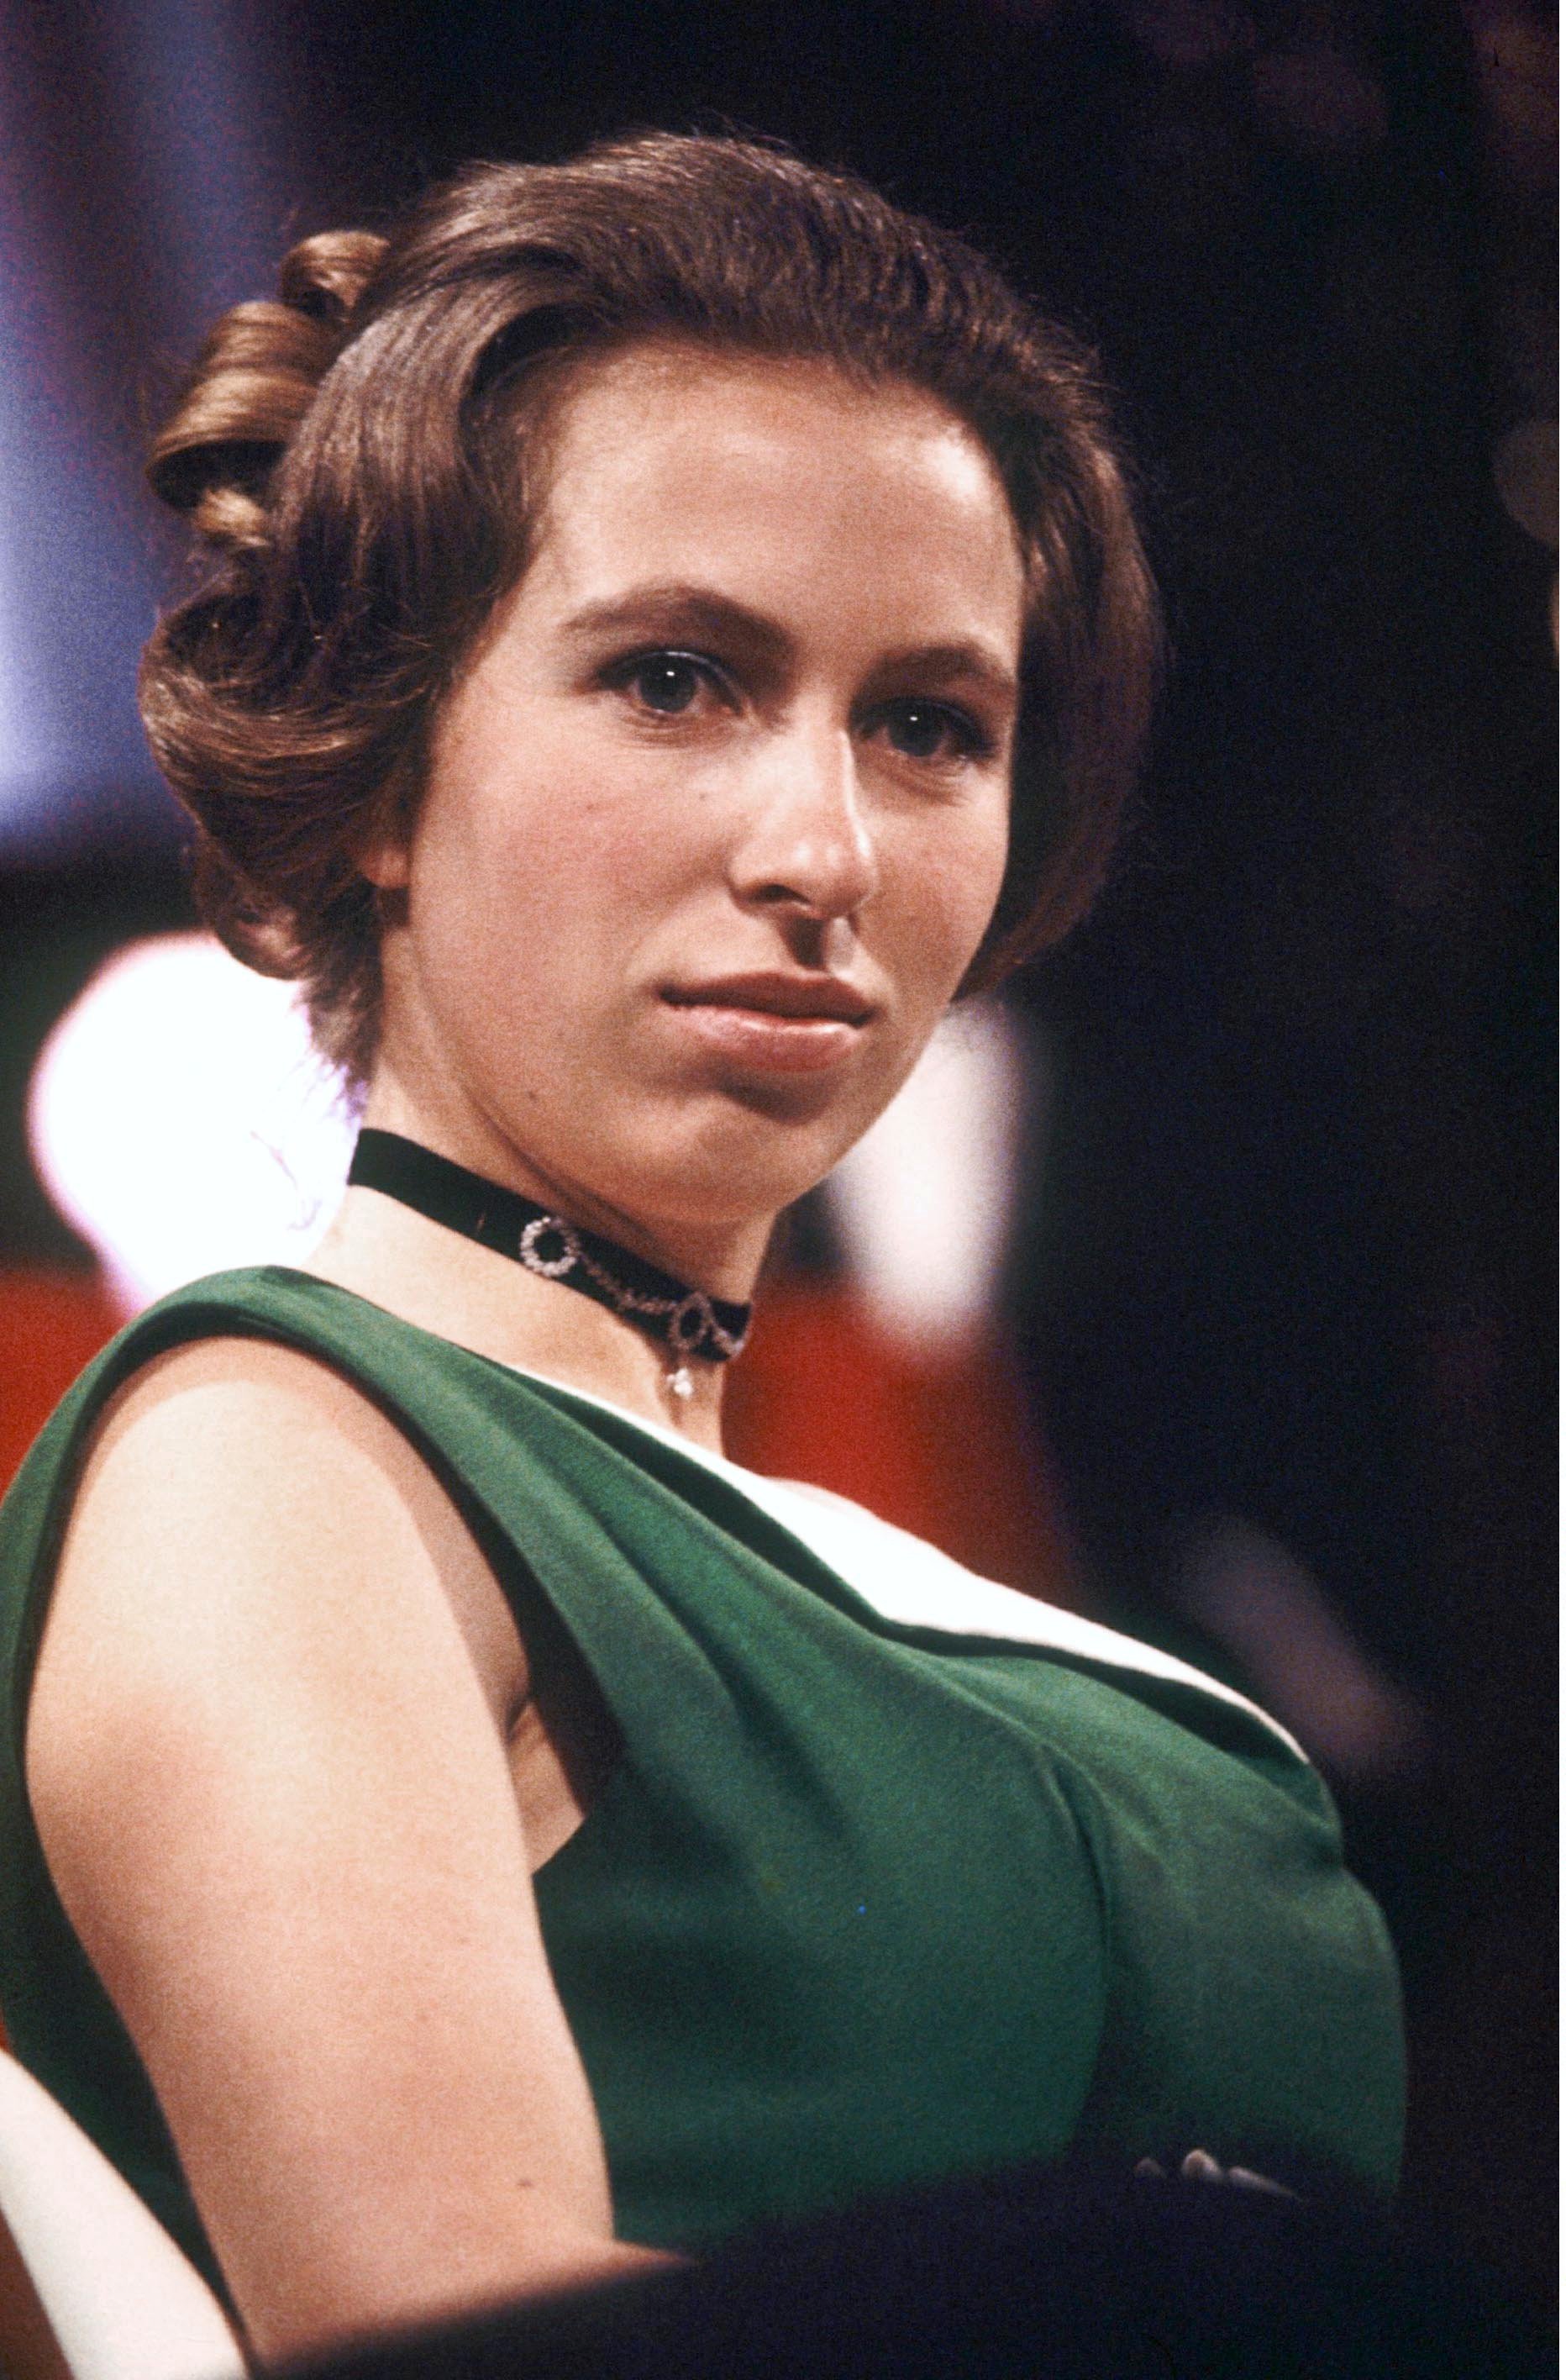 La princesse Anne assiste à la Society of Film and Television Awards, qui deviendra plus tard BAFTA le 04 mars 1971, à Londres, en Angleterre.  |  Source: Getty Images.